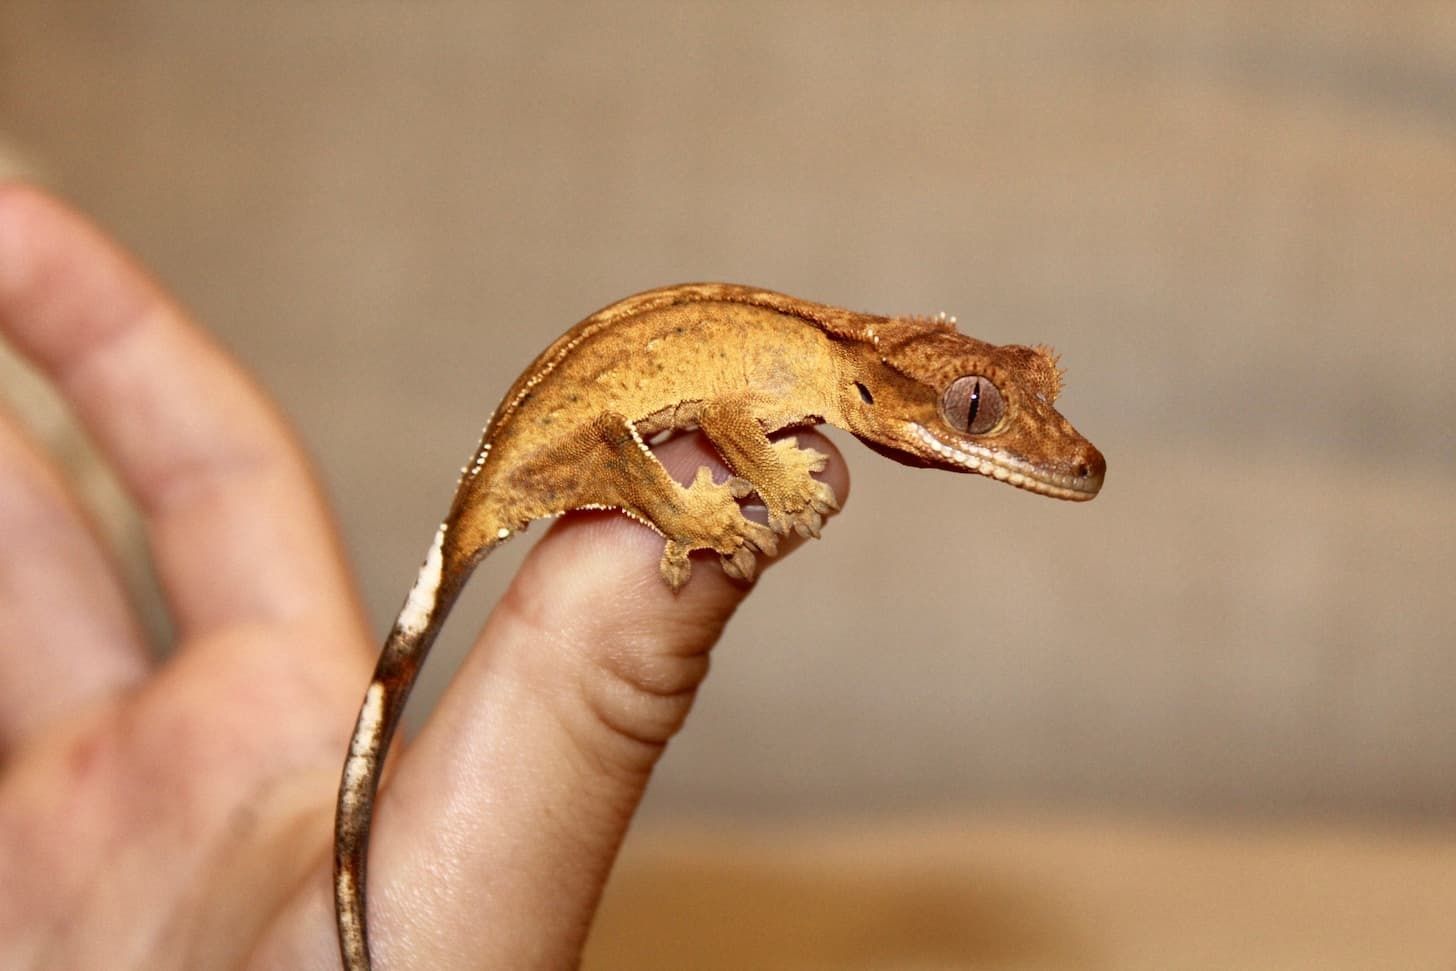 Gecko crested , gecko cu creastă